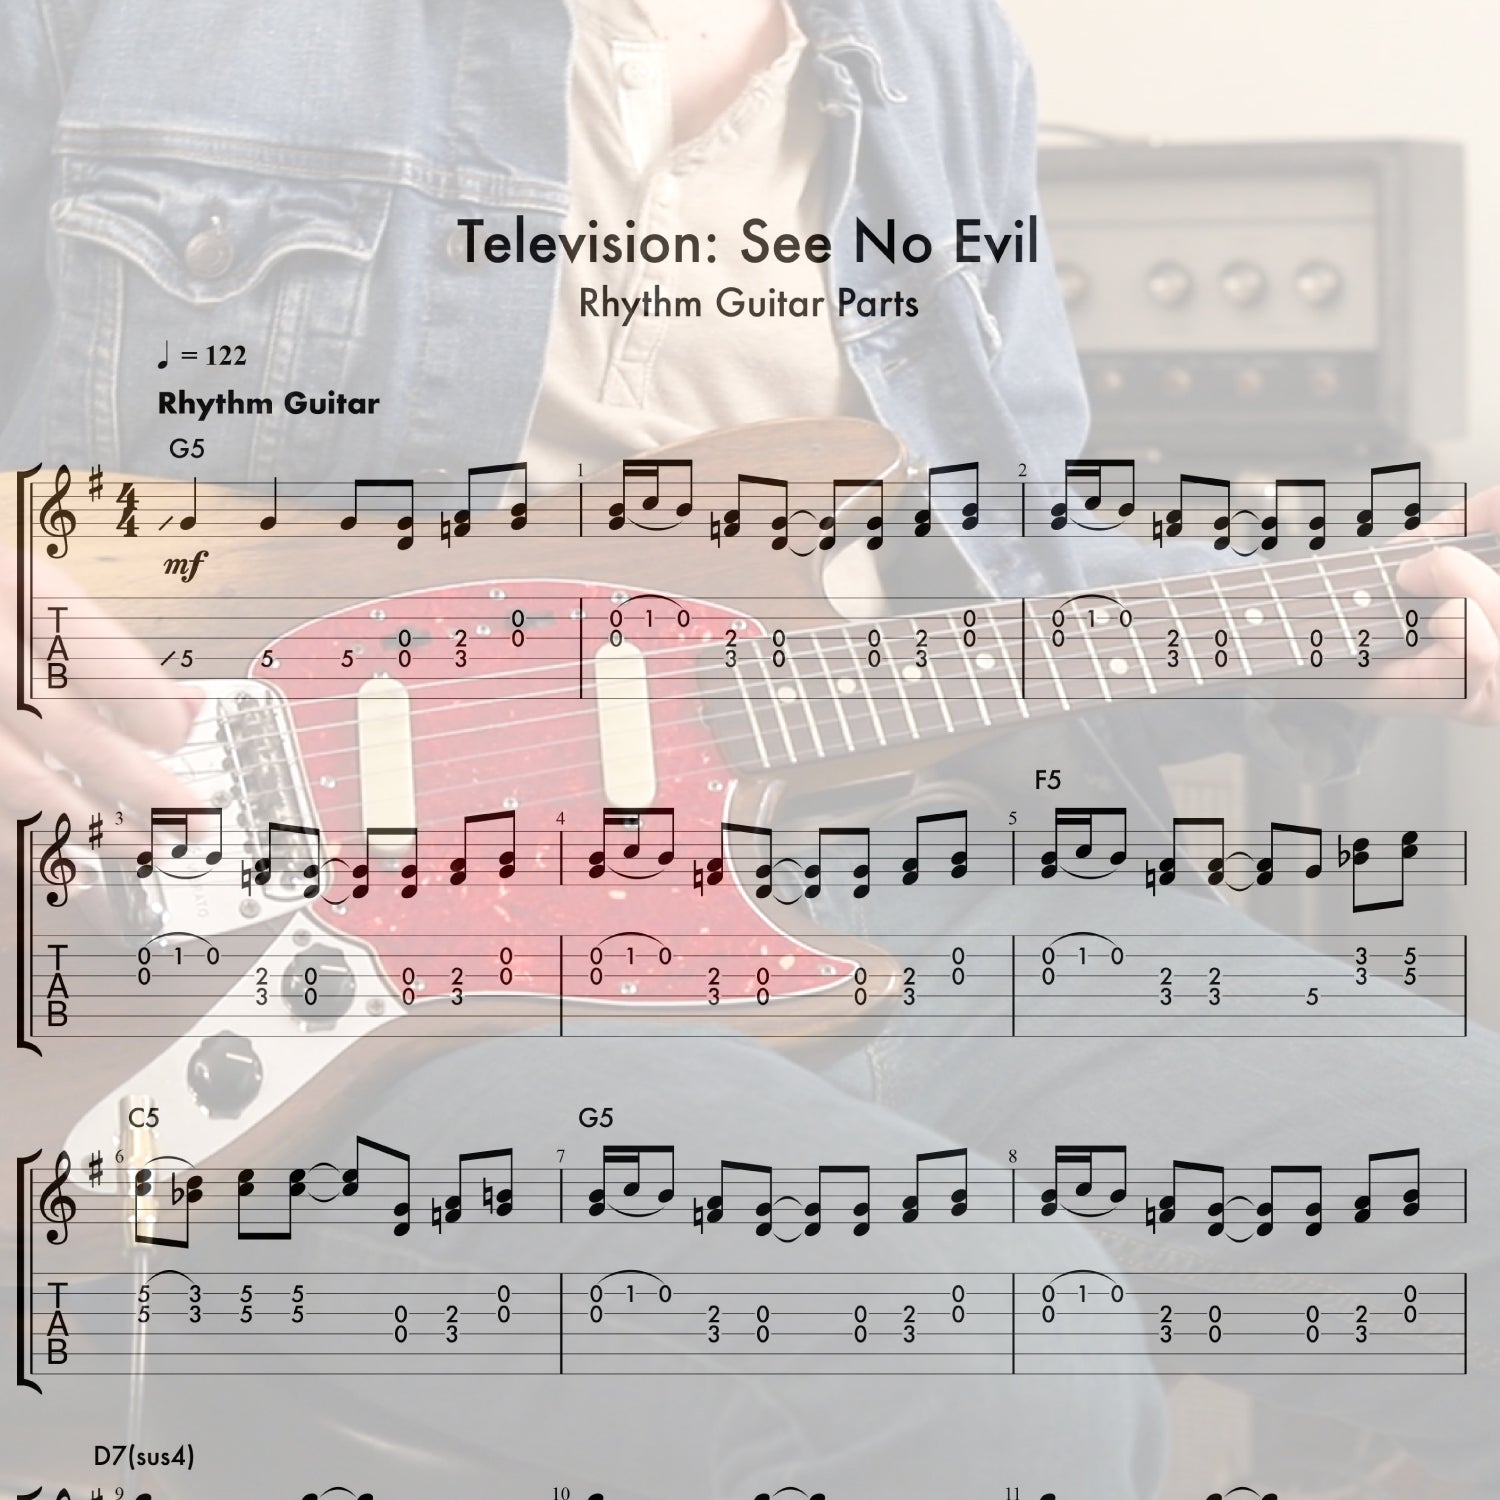 Television's "See No Evil" Rhythm Guitar Parts